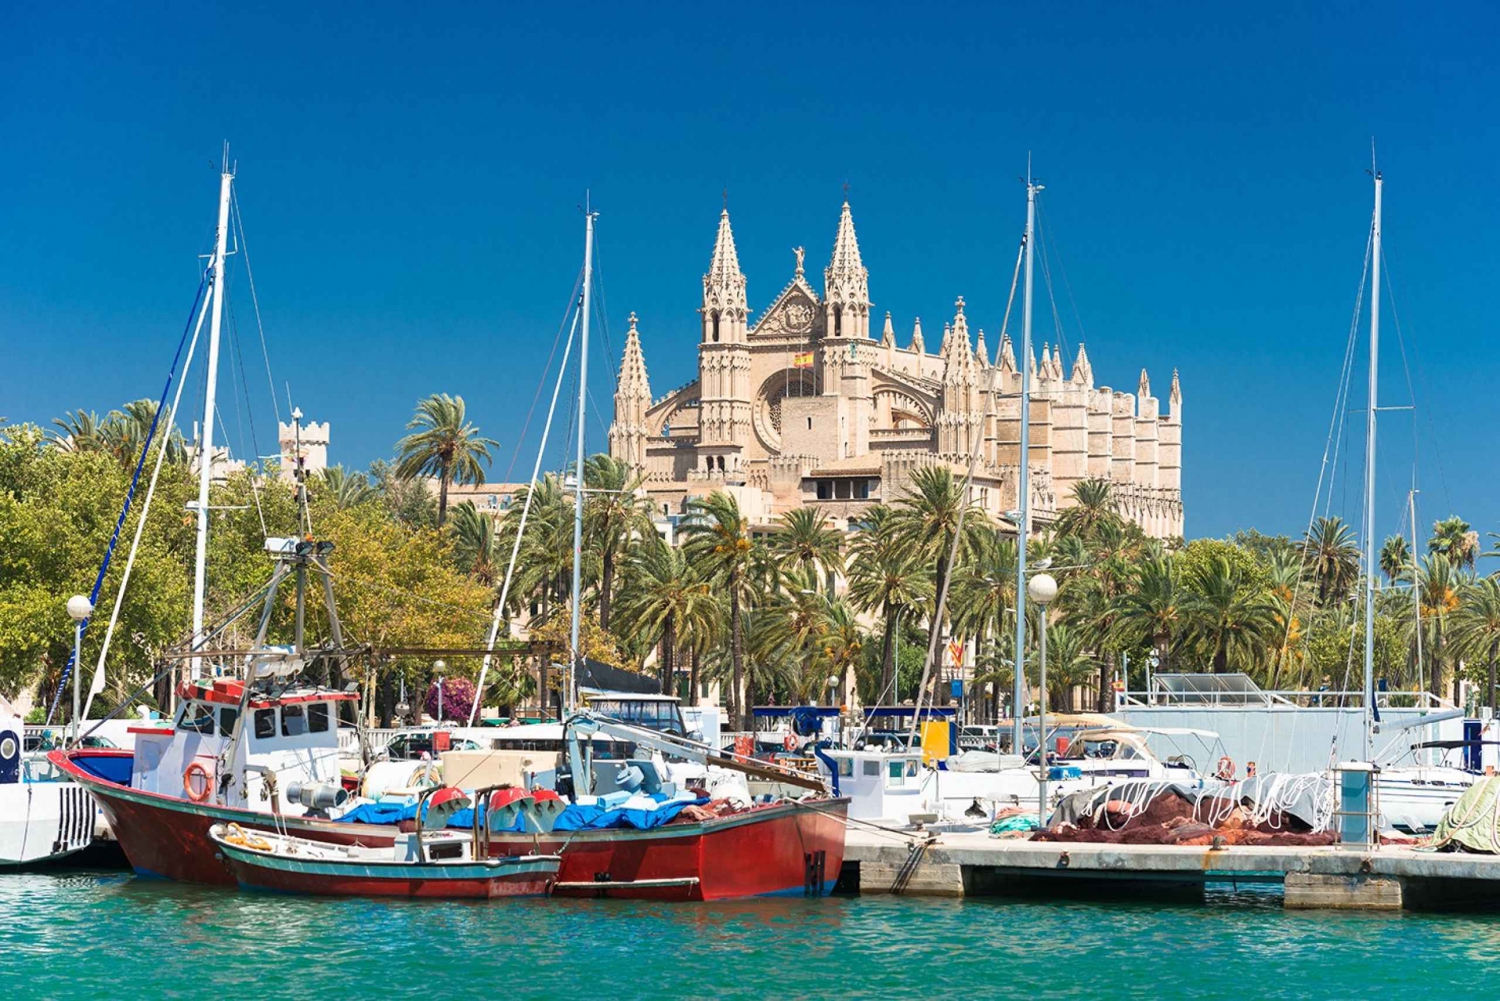 Palma de Mallorca: Palma & Boat Tour